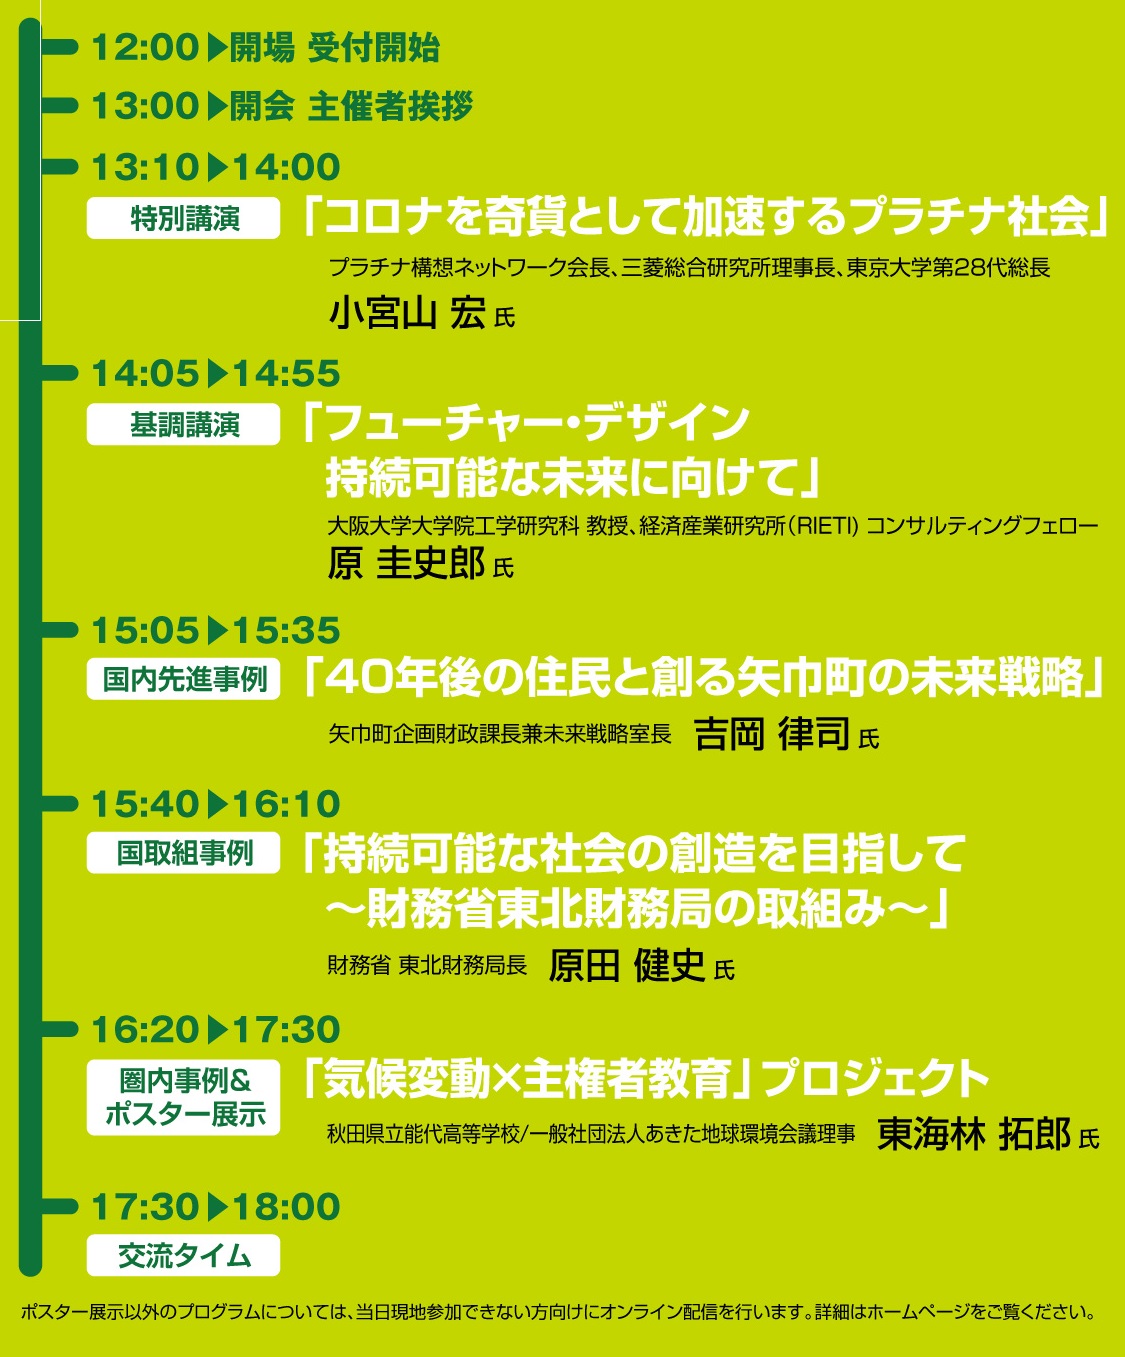 http://www.iwate-eco.jp/%E3%82%B9%E3%82%B1%E3%82%B8%E3%83%A5%E3%83%BC%E3%83%AB.jpg